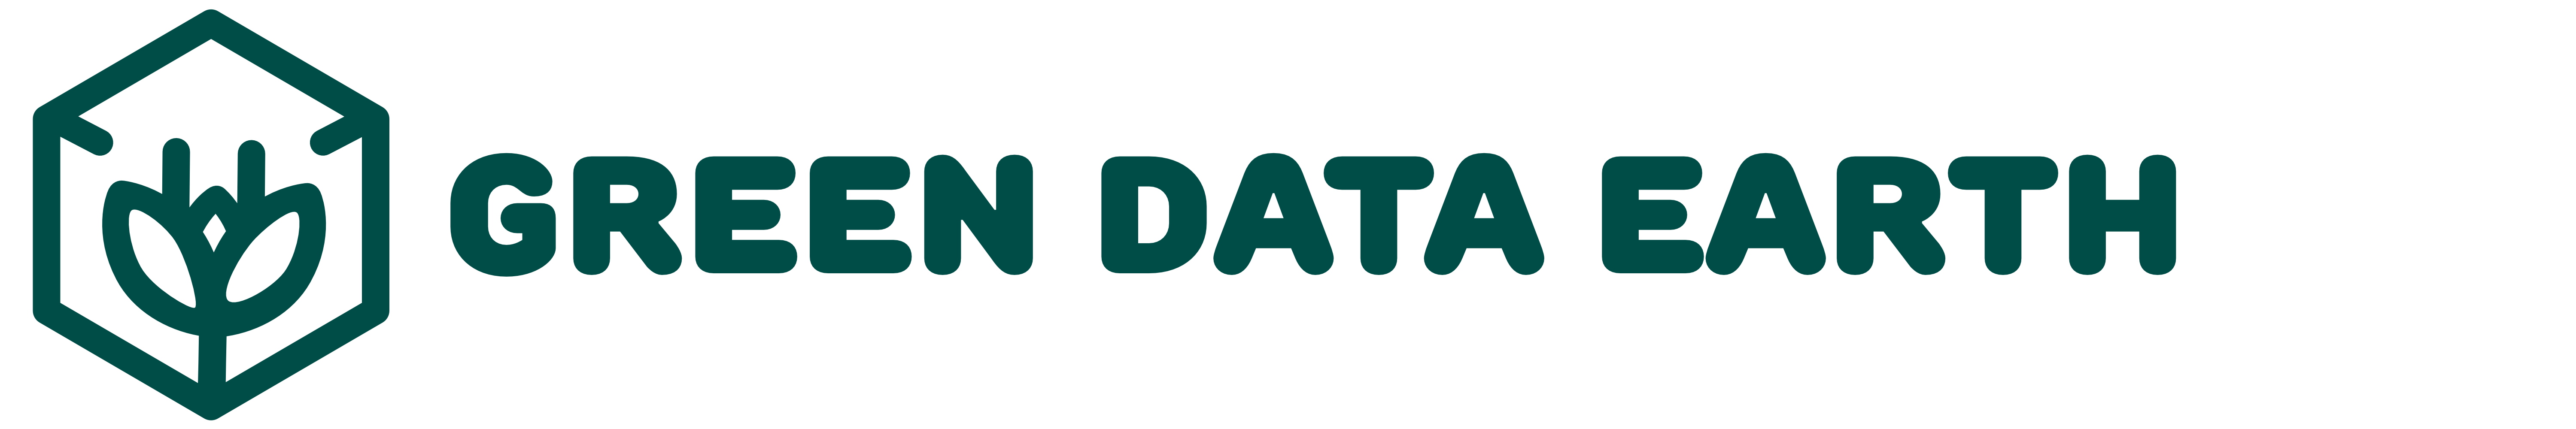 Green Data Earth Logo